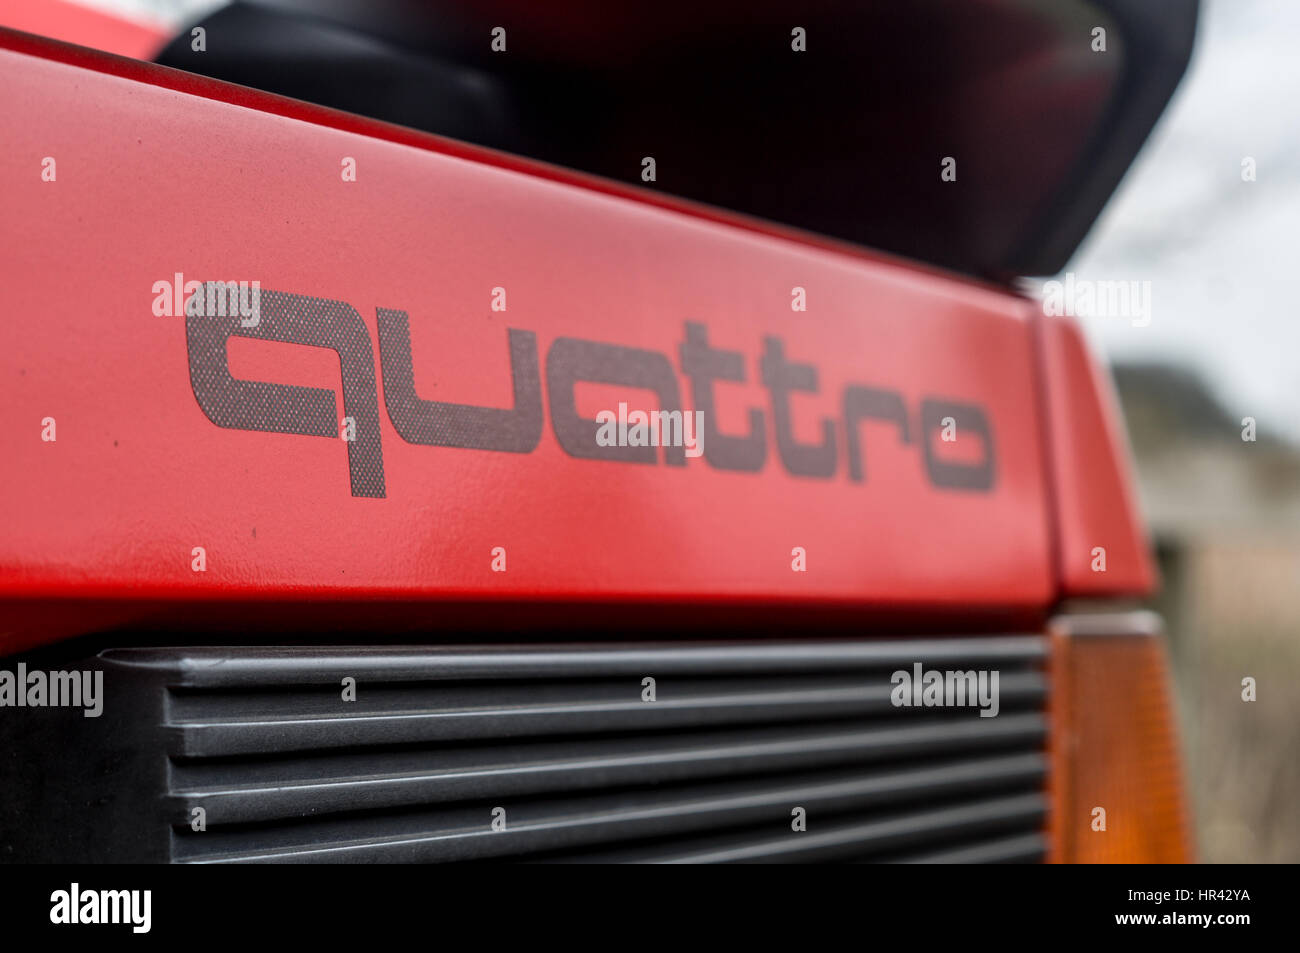 Audi UR Quattro in red. Stock Photo